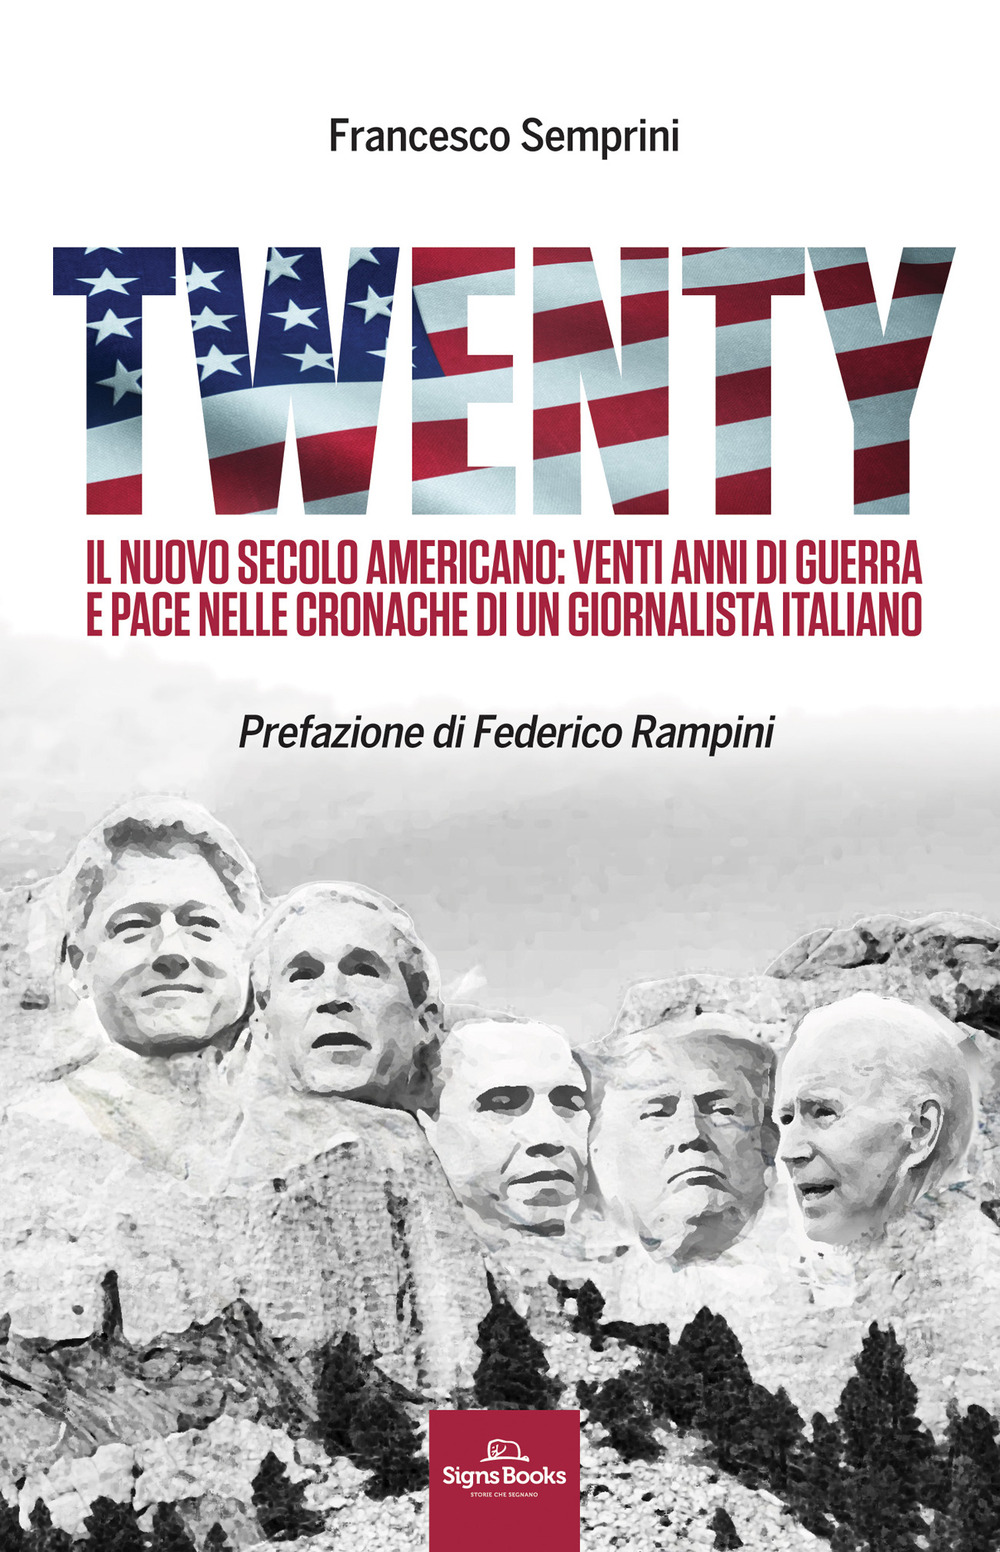 Twenty. Il nuovo secolo americano: venti anni di guerra e pace nelle cronache di un giornalista italiano